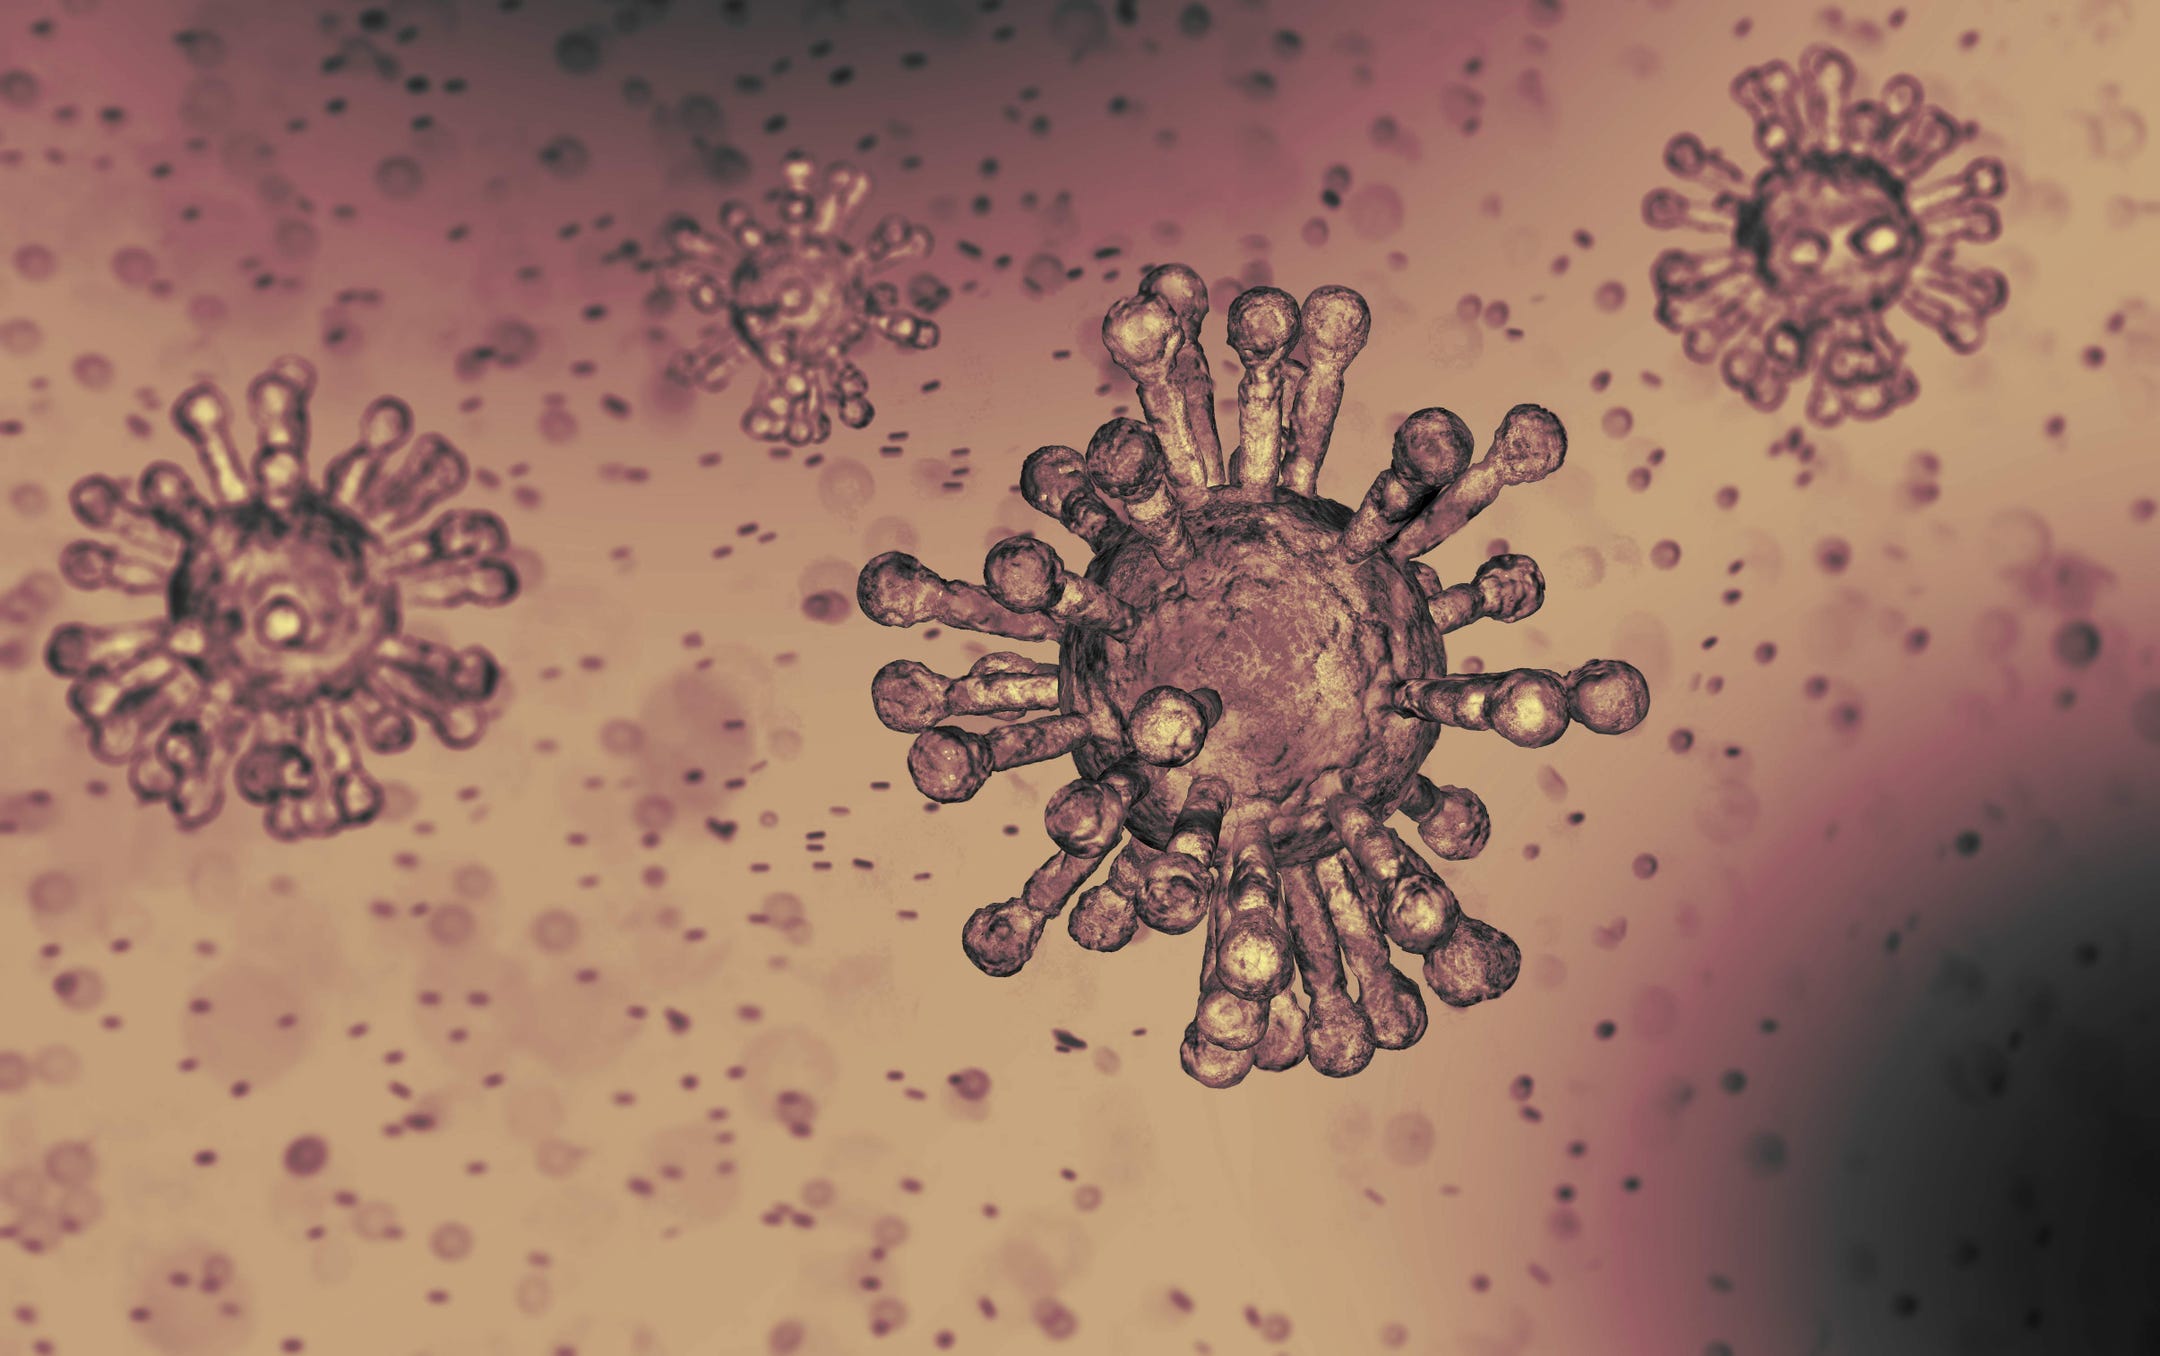 الأماكن التي ينتقل فيها فيروس كورونا بسهولة